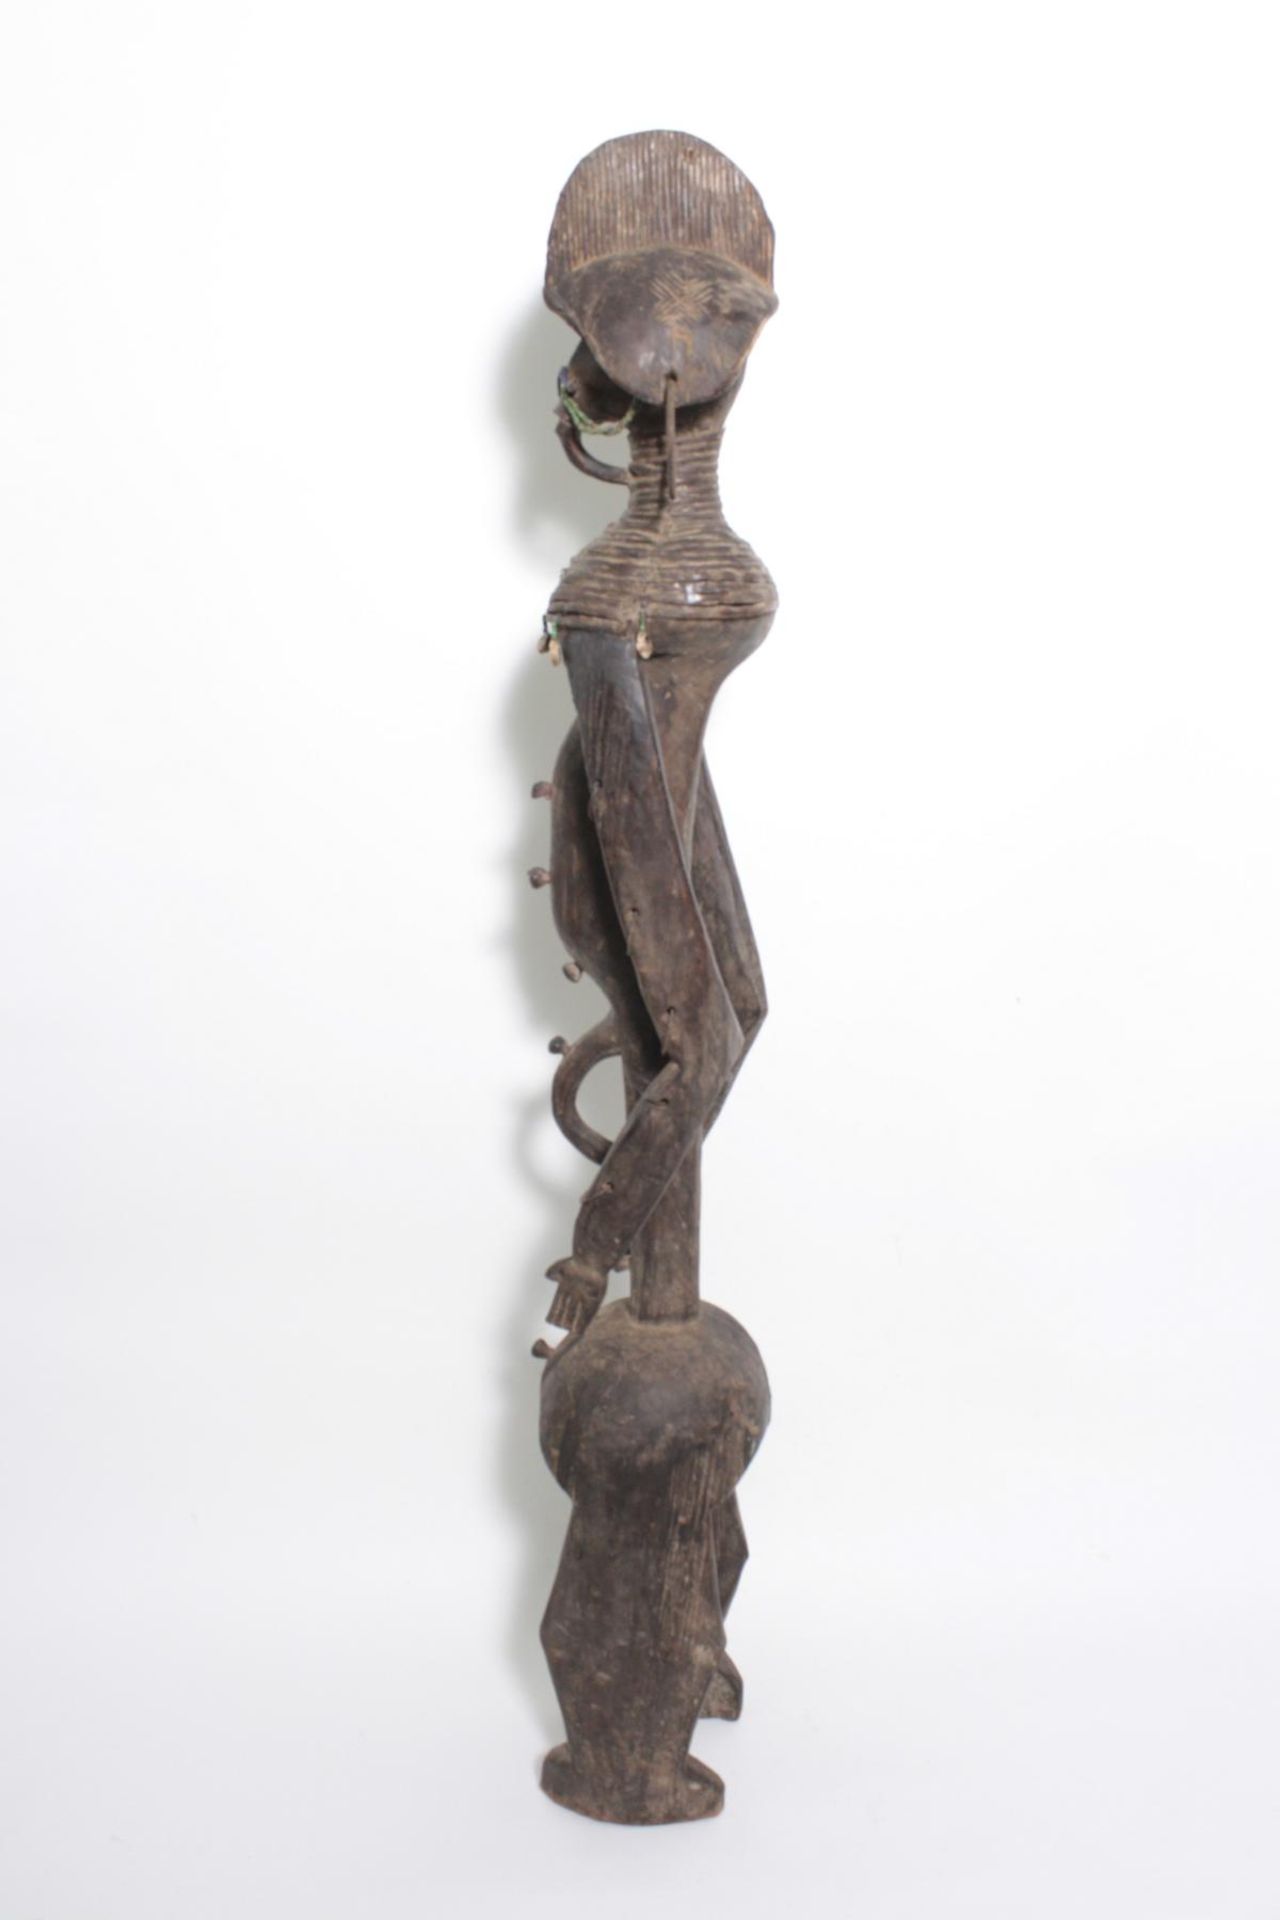 Ritualfigur der Mumuye, "Iagalagana", Nigeria. 1. Hälfte 20. Jh.Holz geschnitzt, dunkelbraune Patina - Bild 12 aus 15